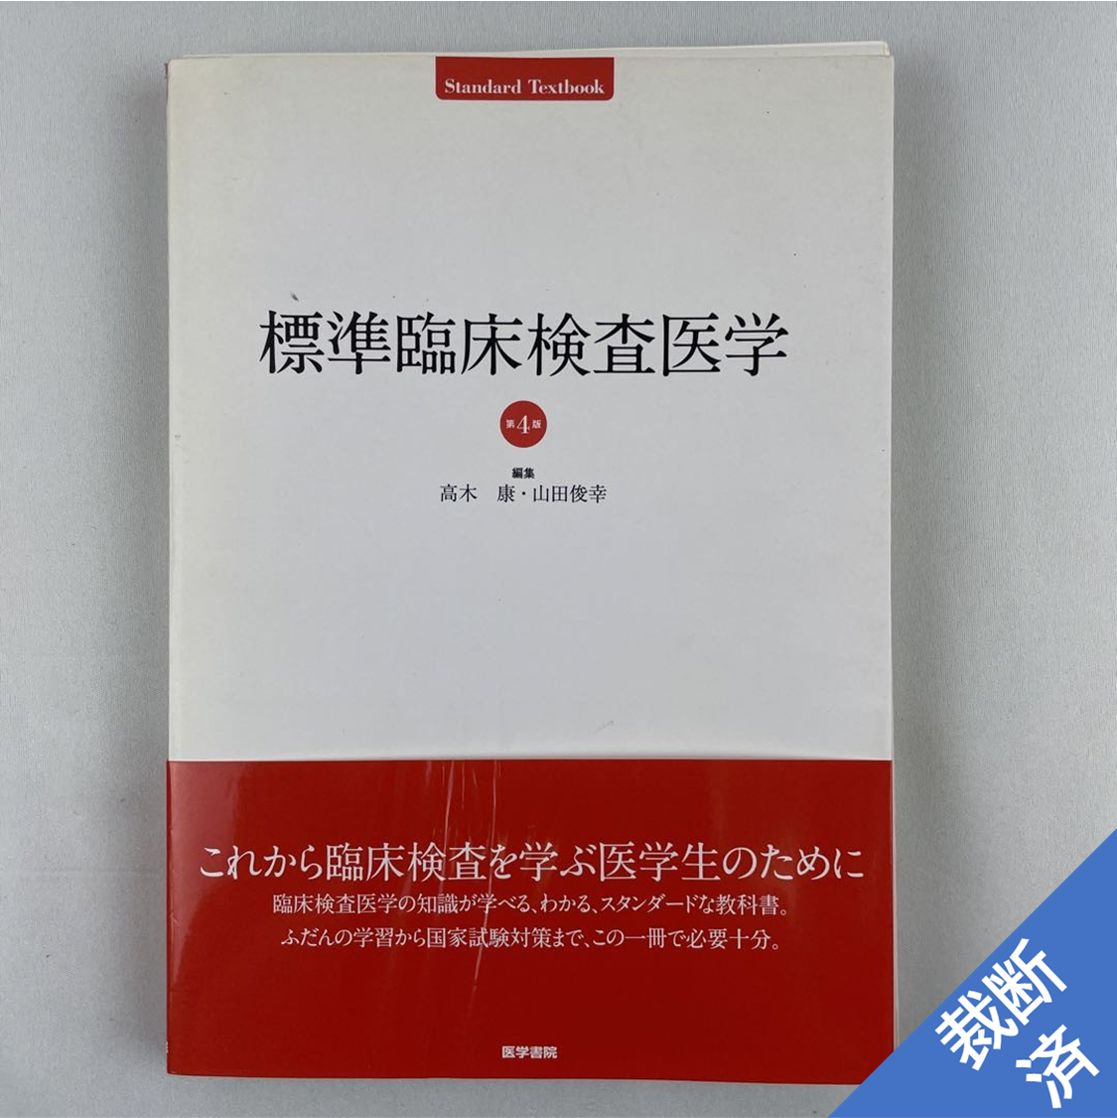 標準臨床検査医学 第5版 (Standard Textbook)